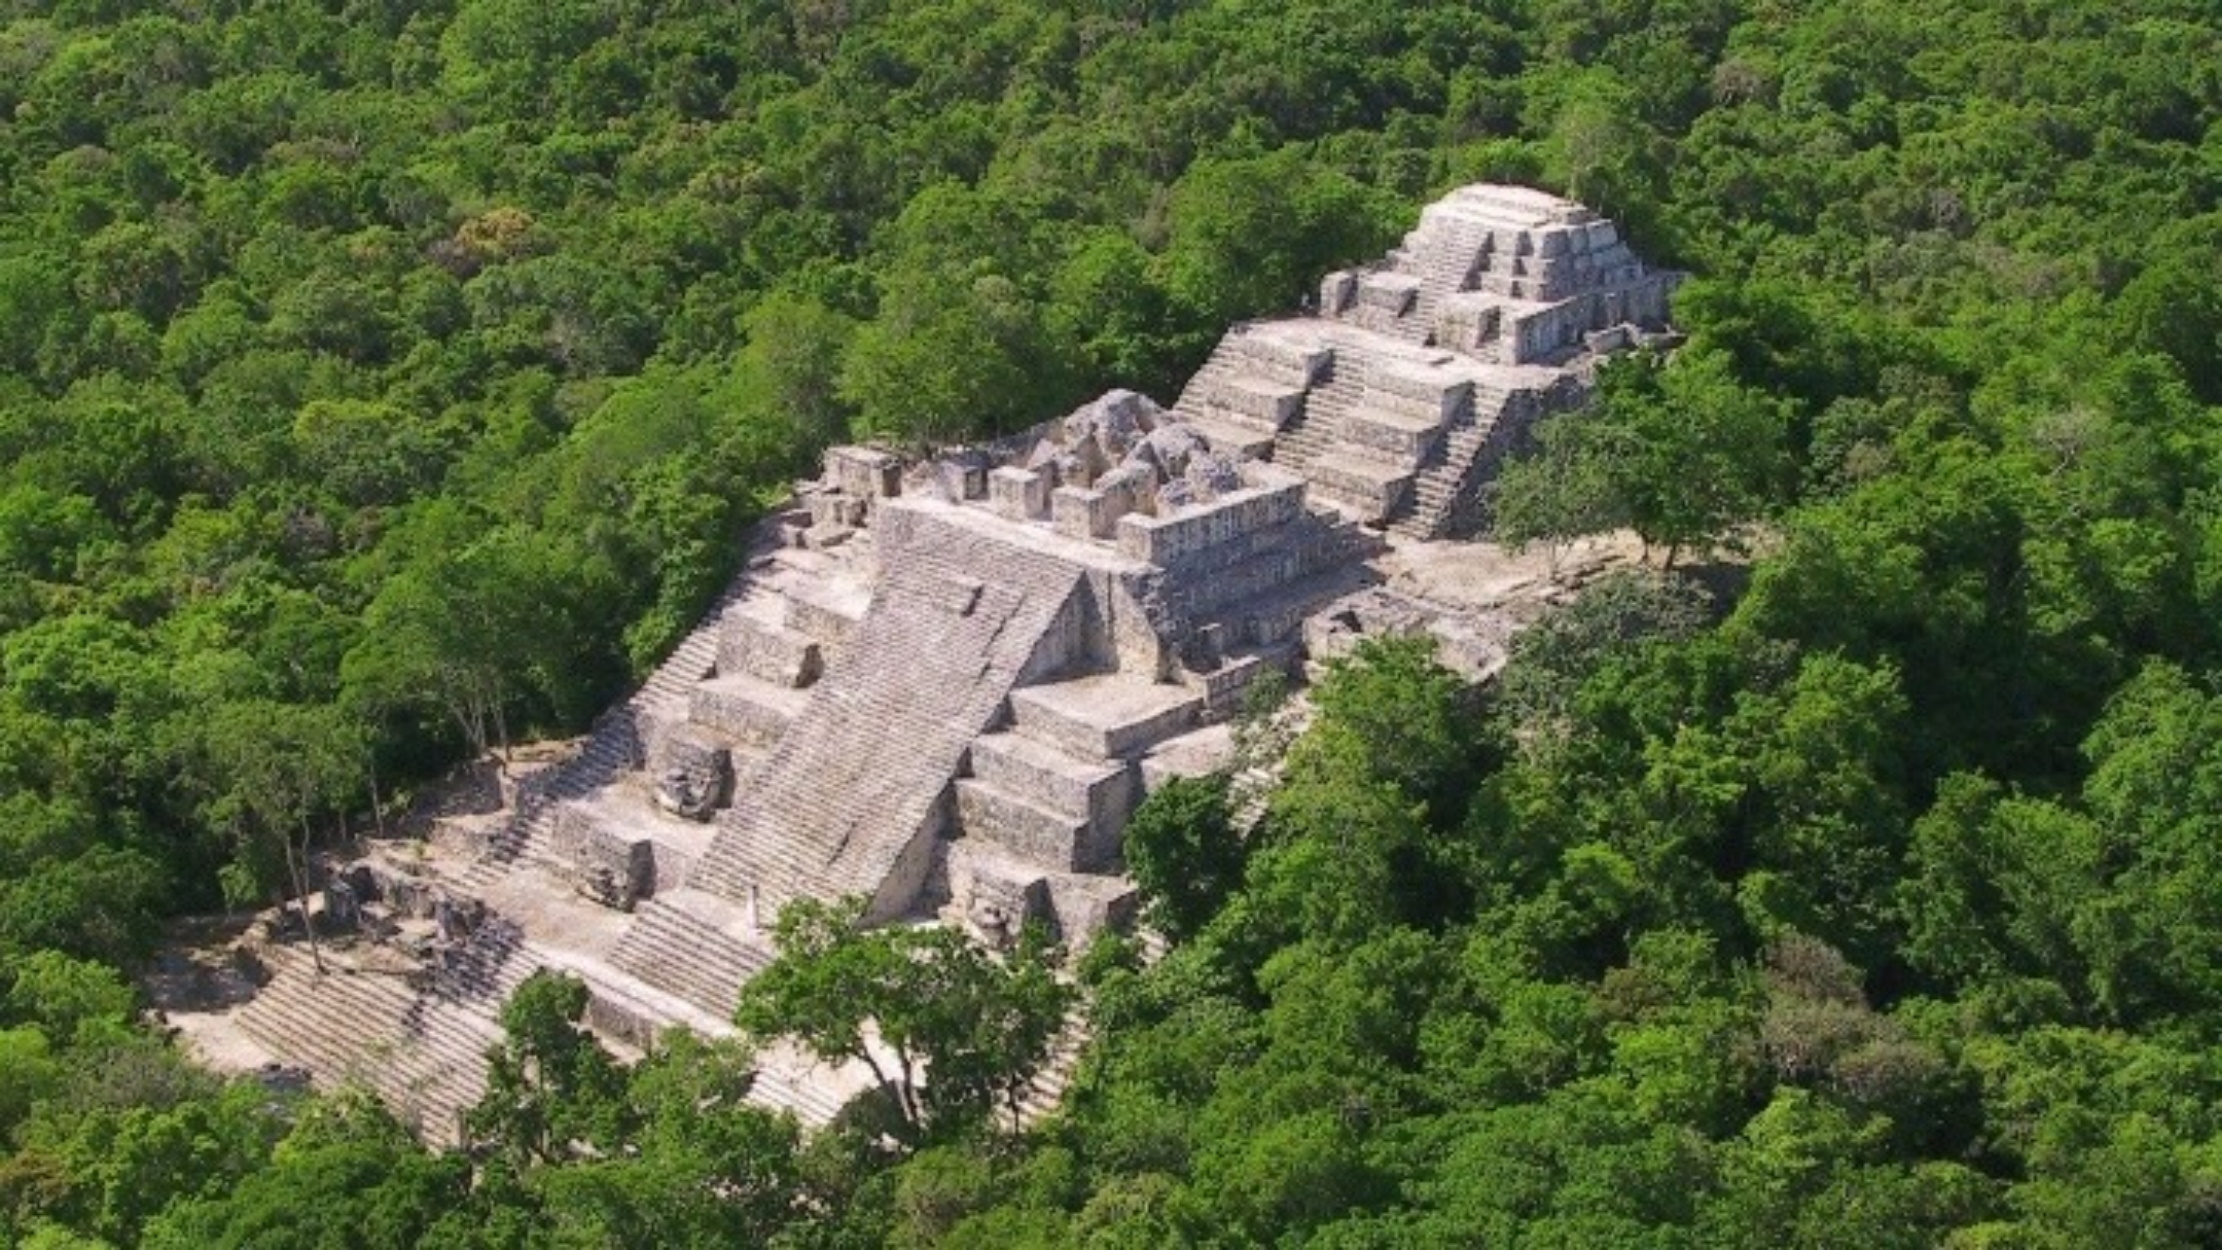 Απίστευτη ανακάλυψη: Αυτή είναι η αρχαιότερη και μεγαλύτερη μνημειακή κατασκευή του πολιτισμού των Μάγια!